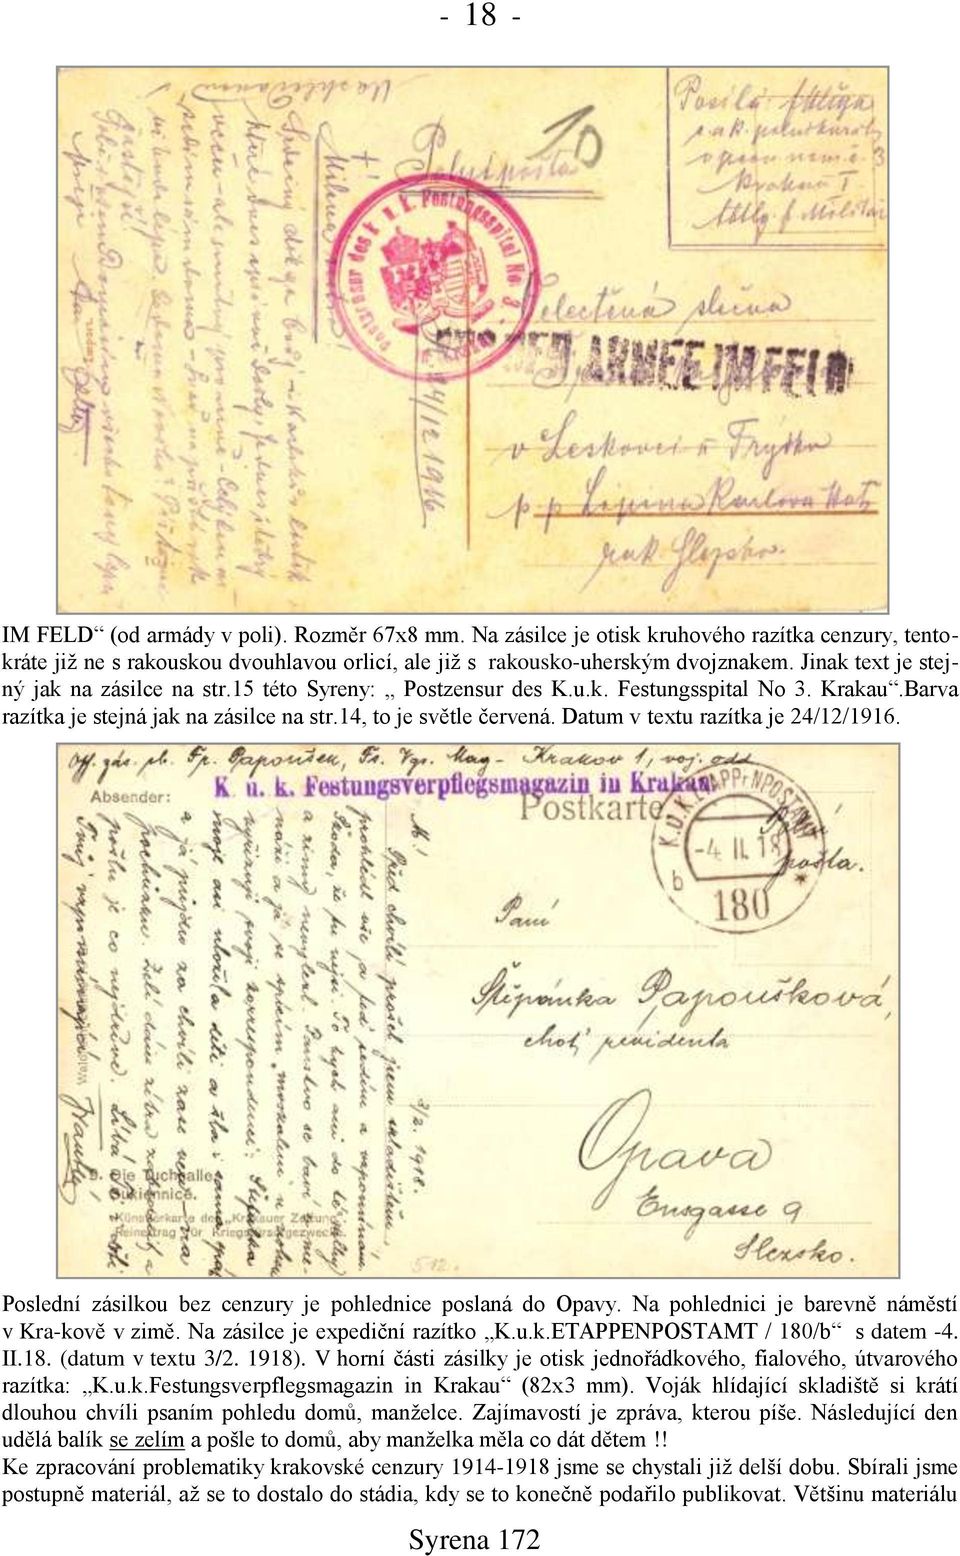 Datum v textu razítka je 24/12/1916. Poslední zásilkou bez cenzury je pohlednice poslaná do Opavy. Na pohlednici je barevně náměstí v Kra-kově v zimě. Na zásilce je expediční razítko K.u.k.ETAPPENPOSTAMT / 180/b s datem -4.